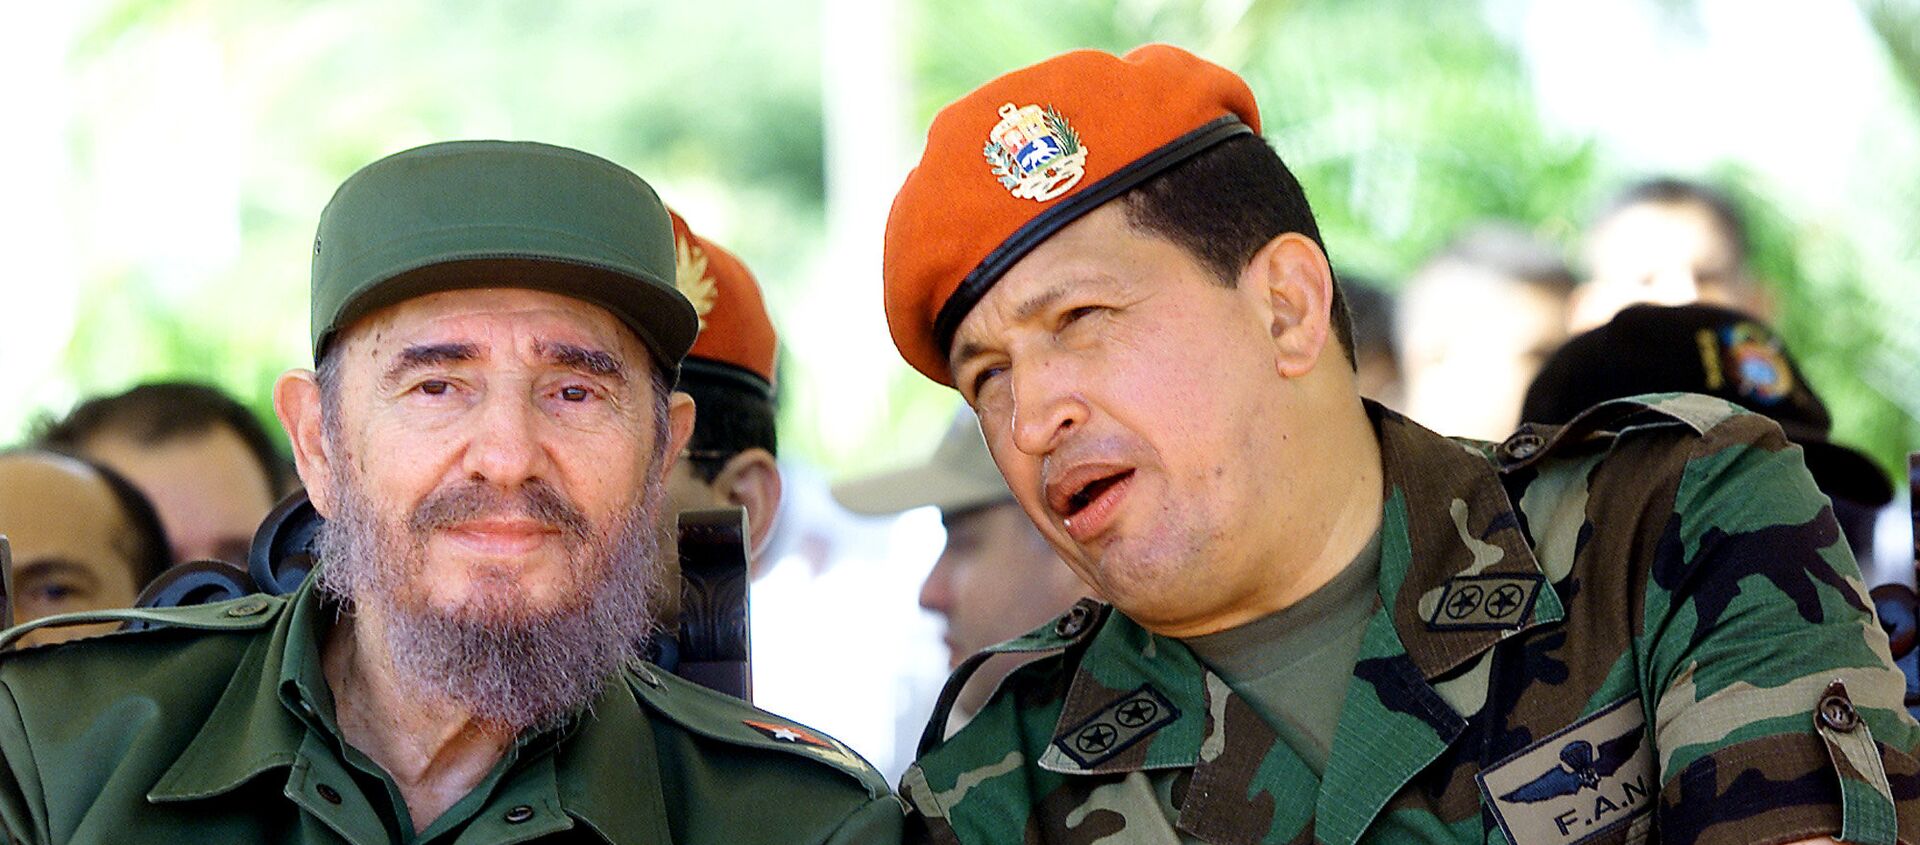 Fidel Castro y Hugo Chávez conversan en Venezuela durante un viaje del líder cubano en 2001 - Sputnik Mundo, 1920, 25.11.2018